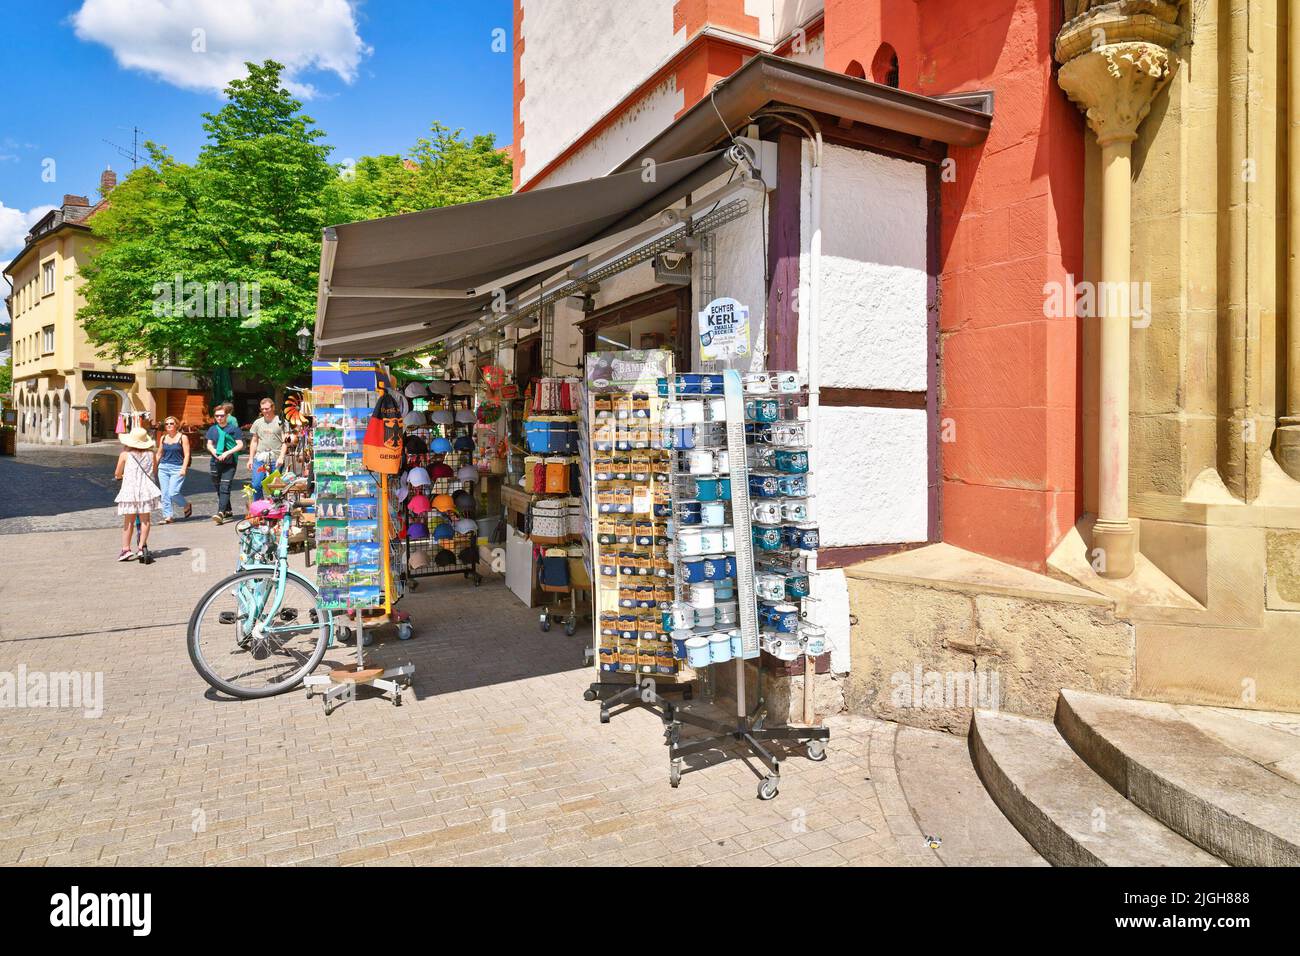 Würzburg, Germania - Giugno 2022: Negozio di souvenir turistico presso la chiesa 'Marienkapelle' situata nella piazza del mercato Foto Stock